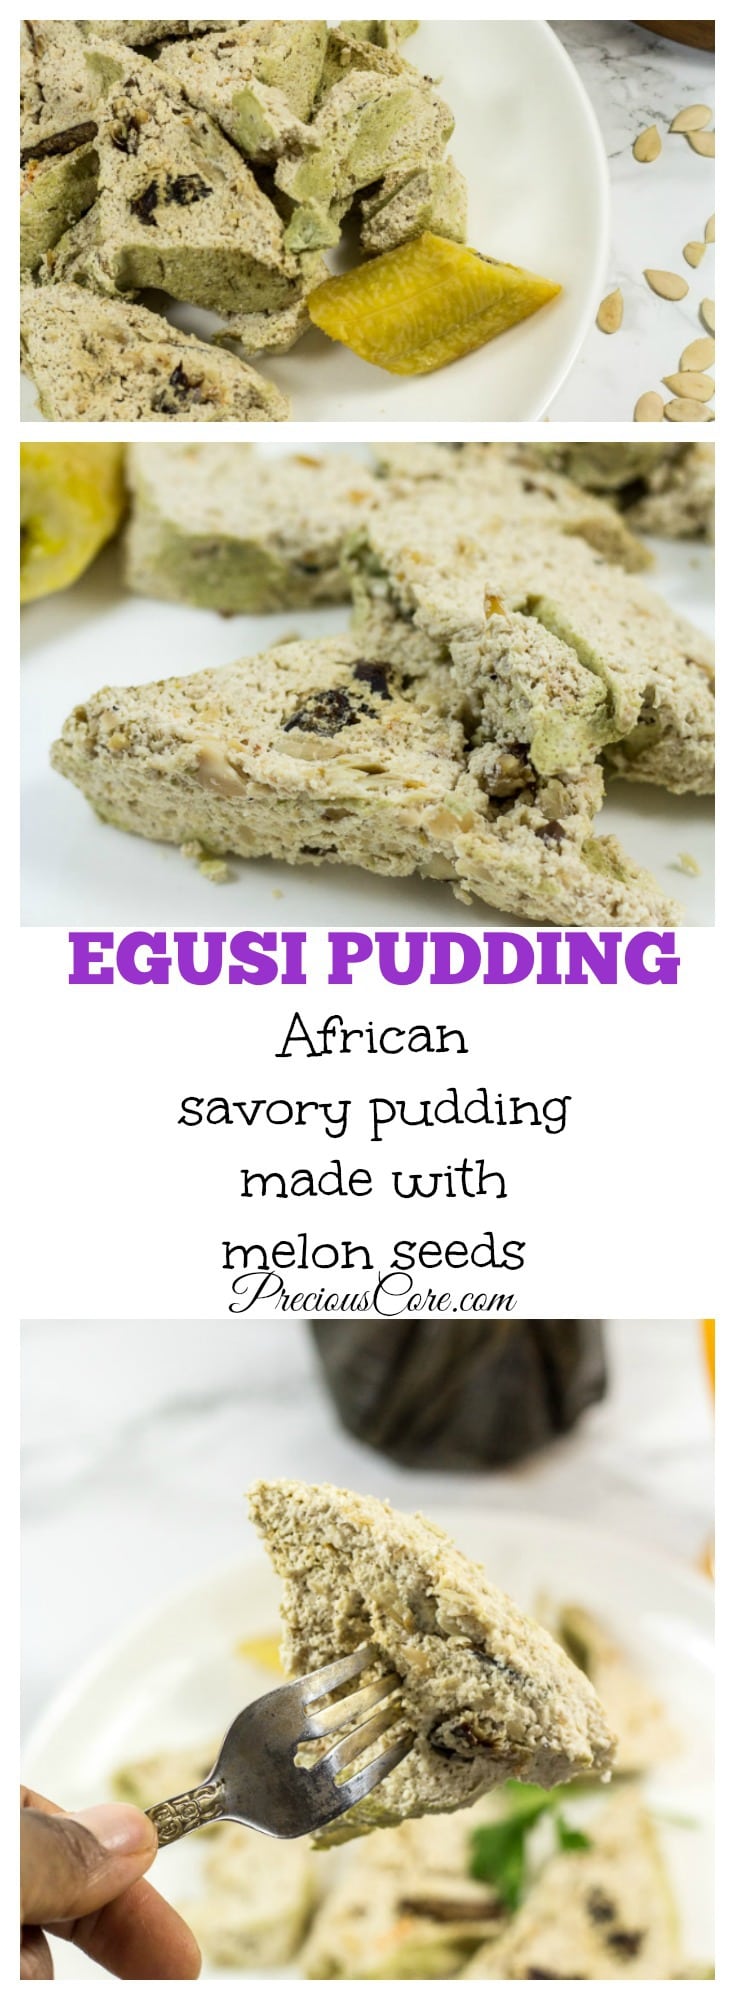 Egusi pudding recipe- Precious Core